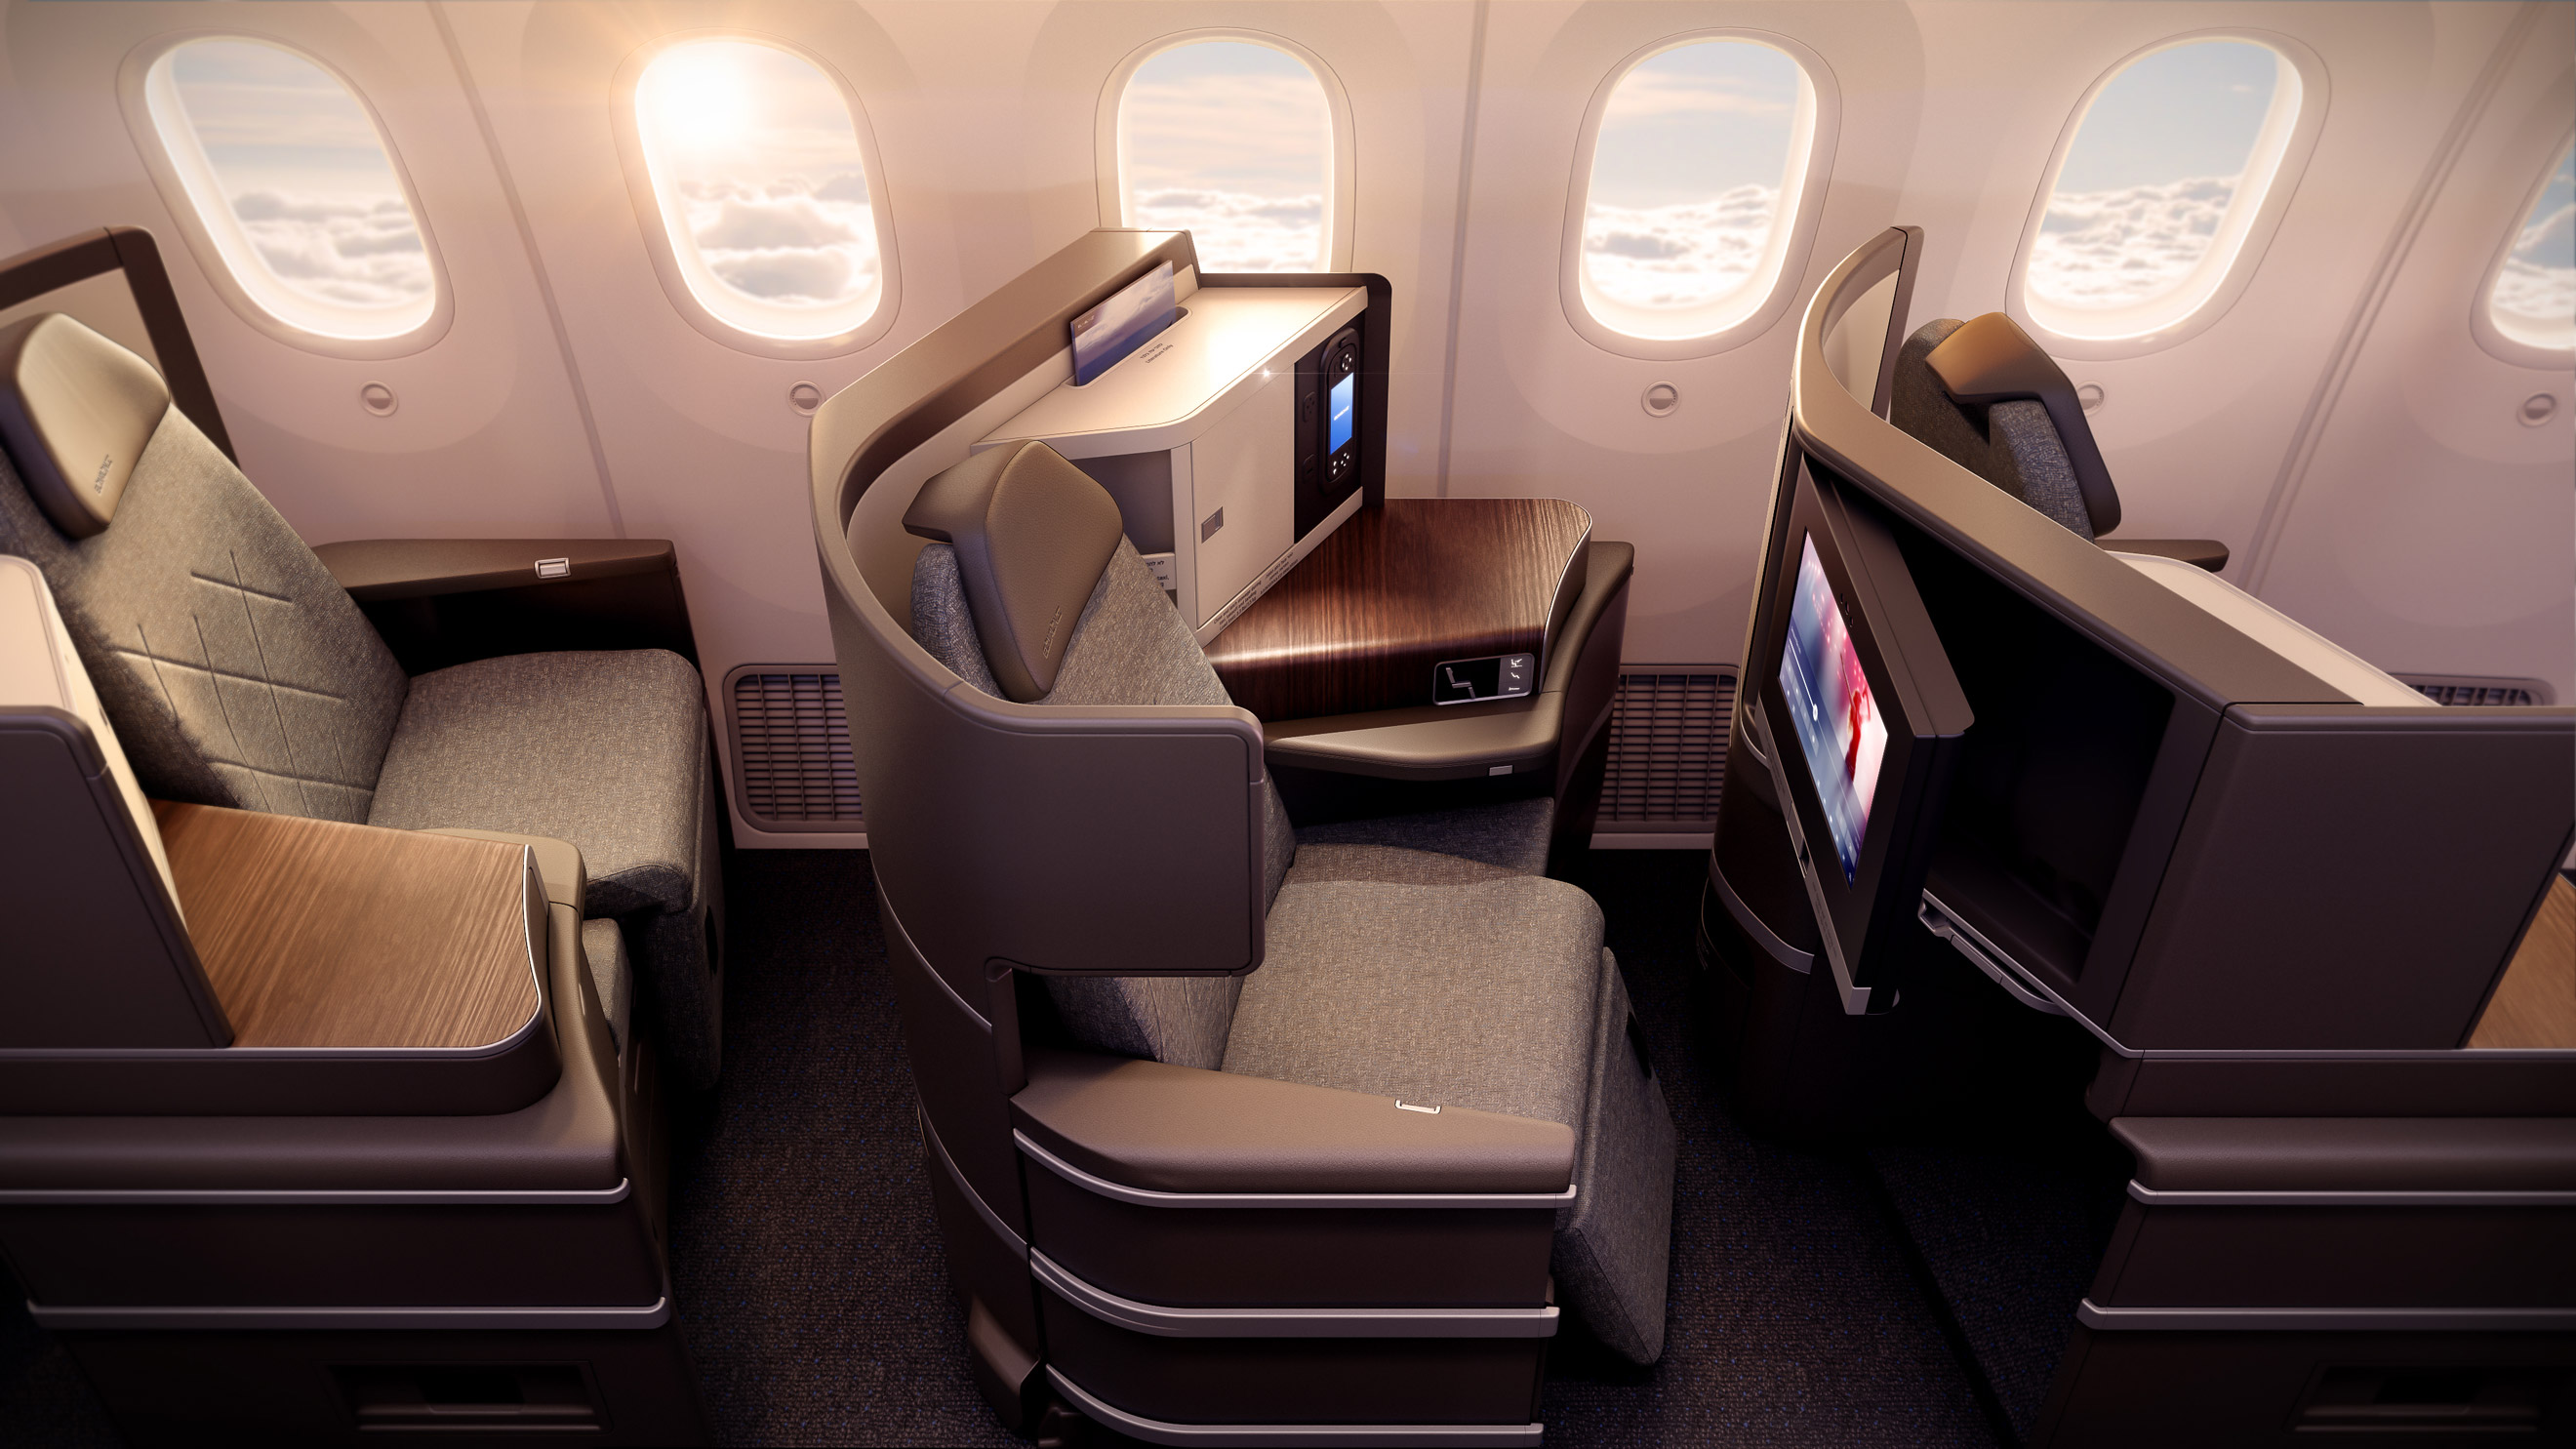 EL AL Dreamliner Business Class 787